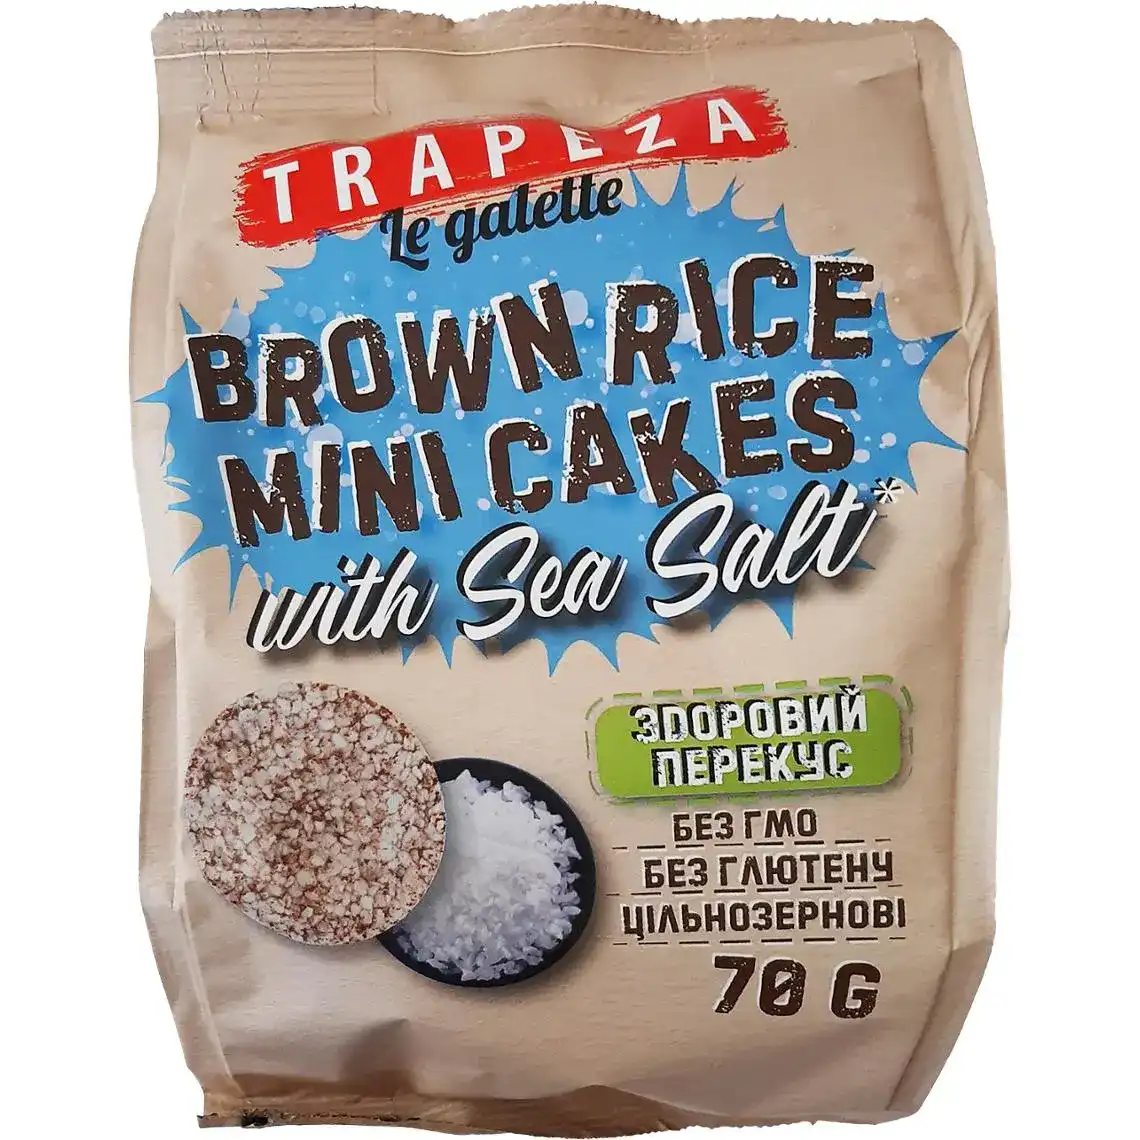 Міні-галети Trapeza рисові з морською сіллю 70 г